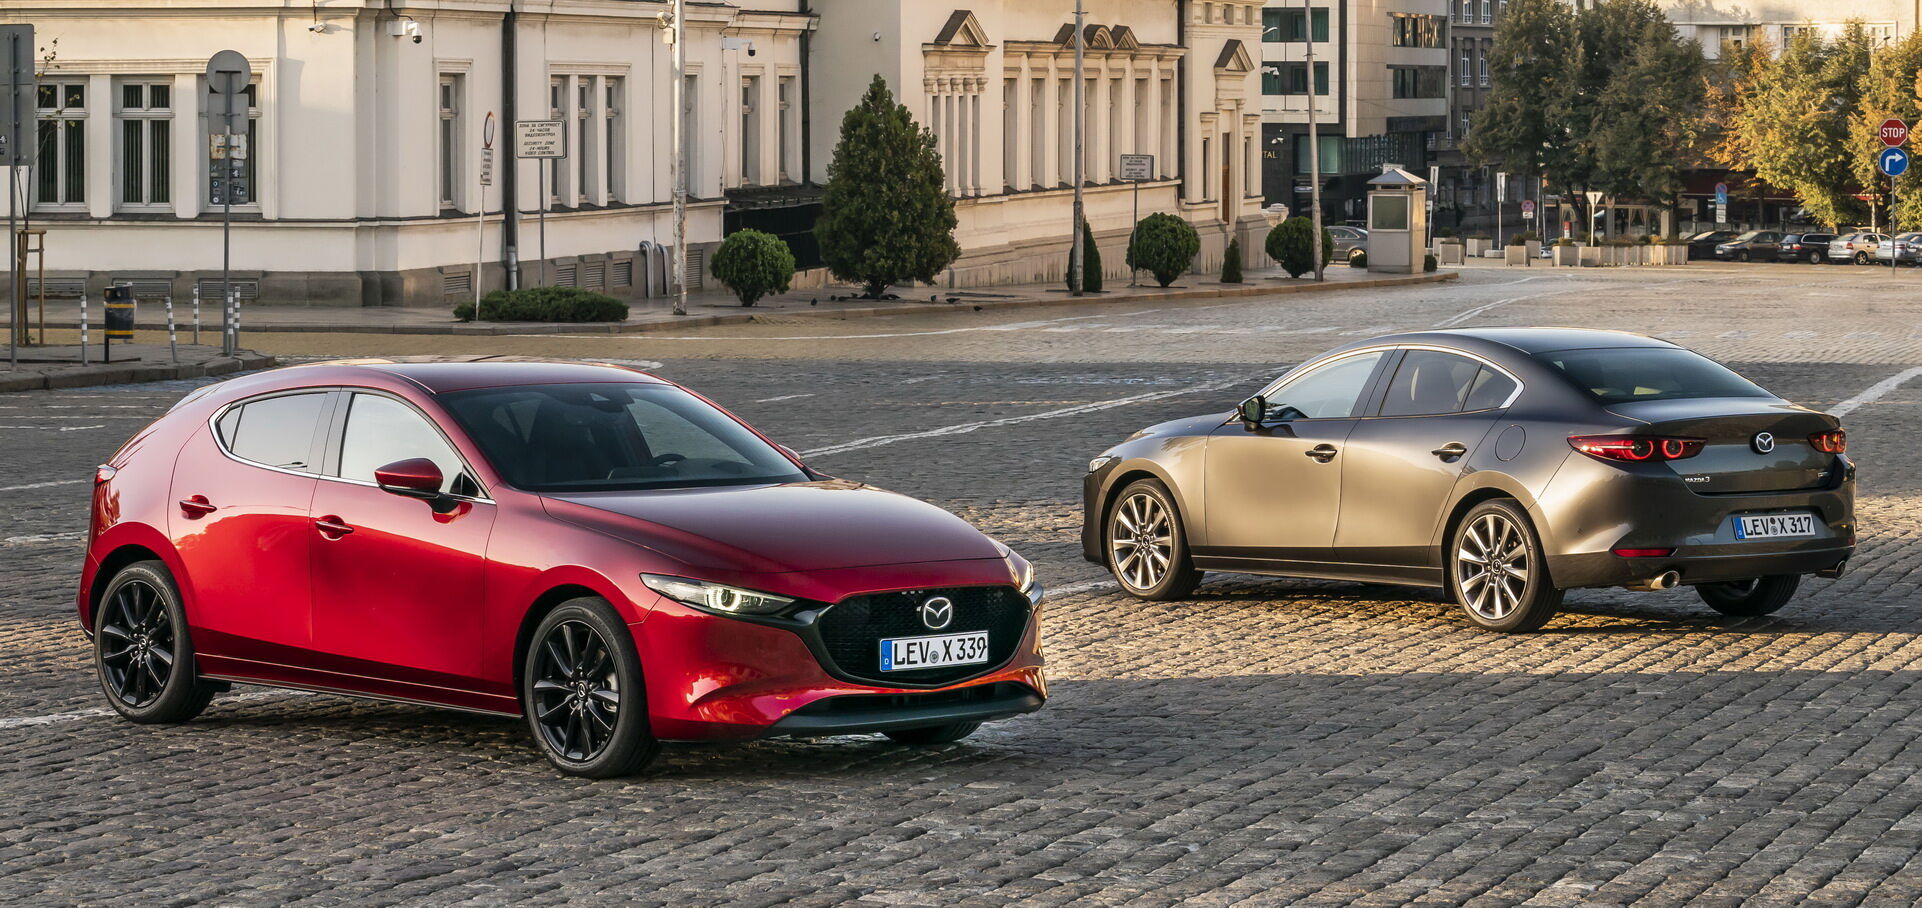 Mazda3 отримала престижну нагороду WCOTY 2020 за дизайн